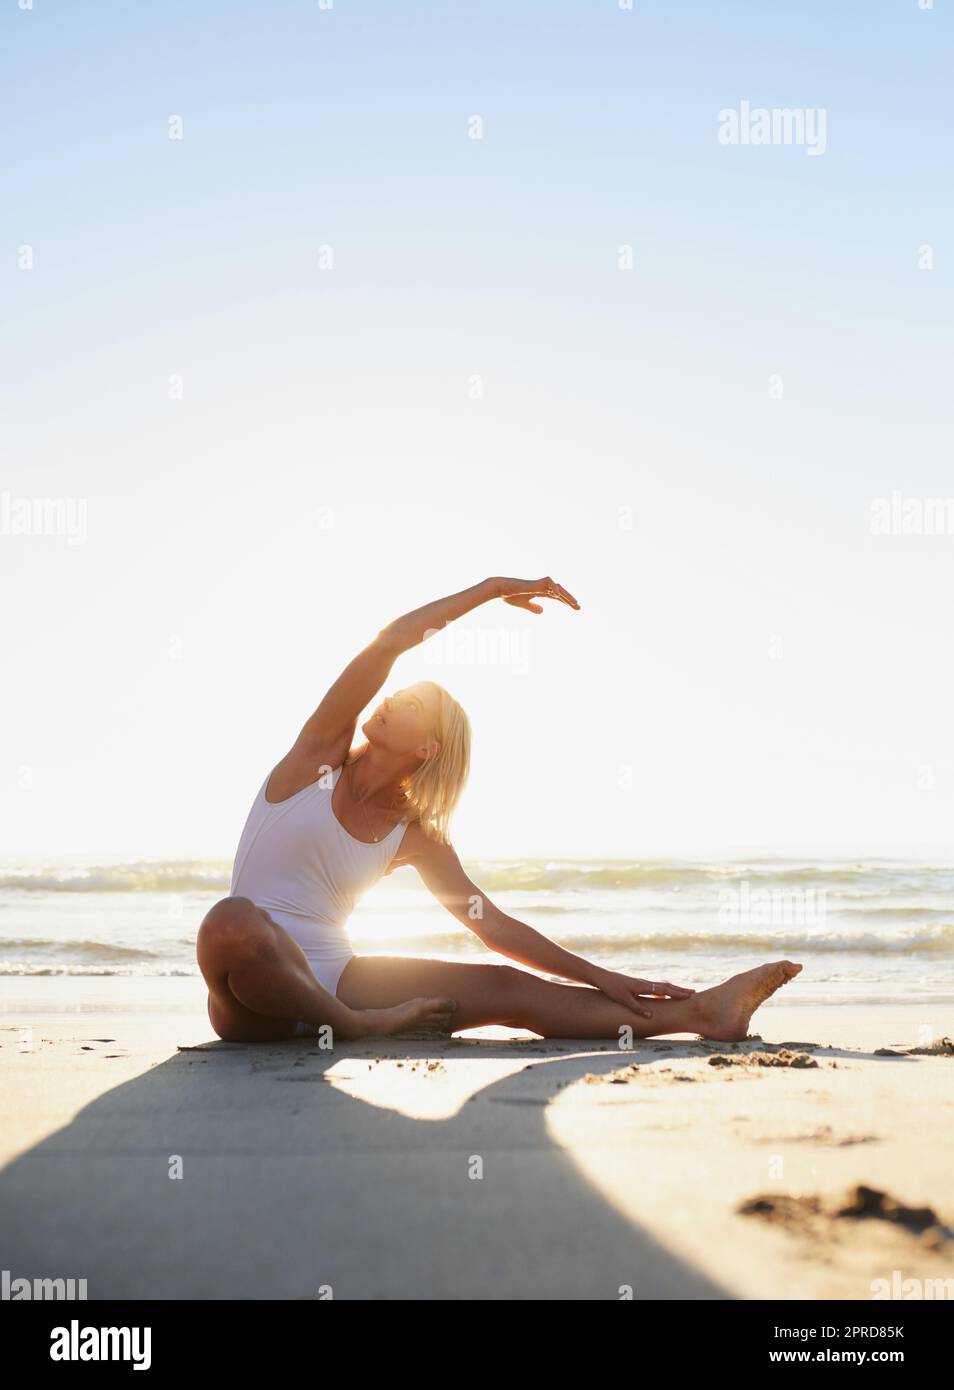 Faire attention à la sensation de mon corps. Prise de vue en longueur d'une jeune femme attirante faisant un étirement de yoga tôt le matin sur la plage. Banque D'Images